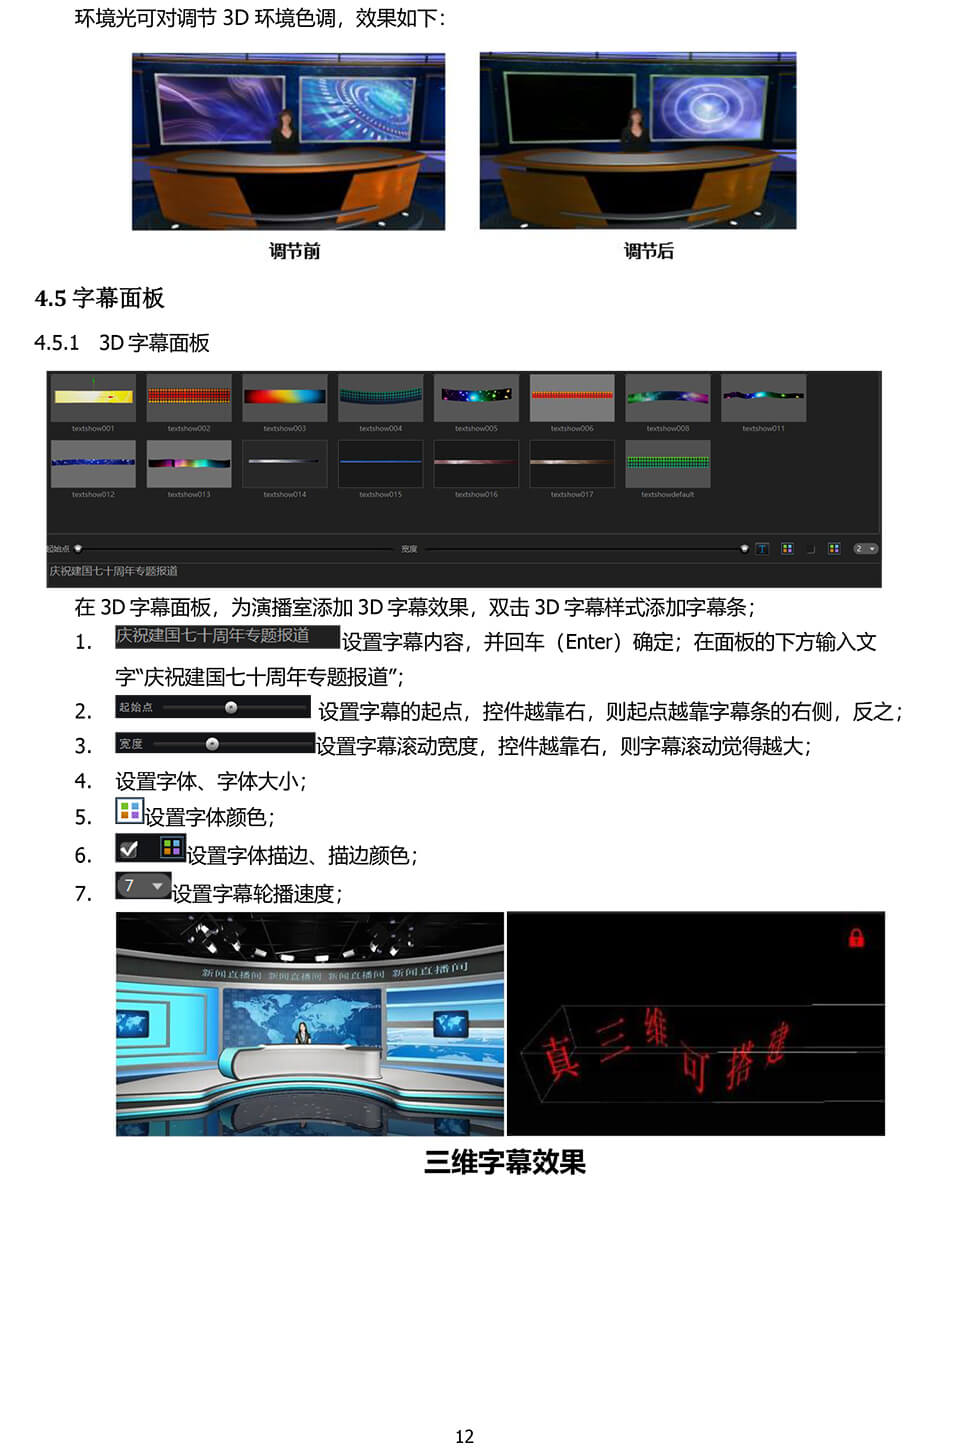 新一路渲染虚拟演播室用户手册-13.jpg